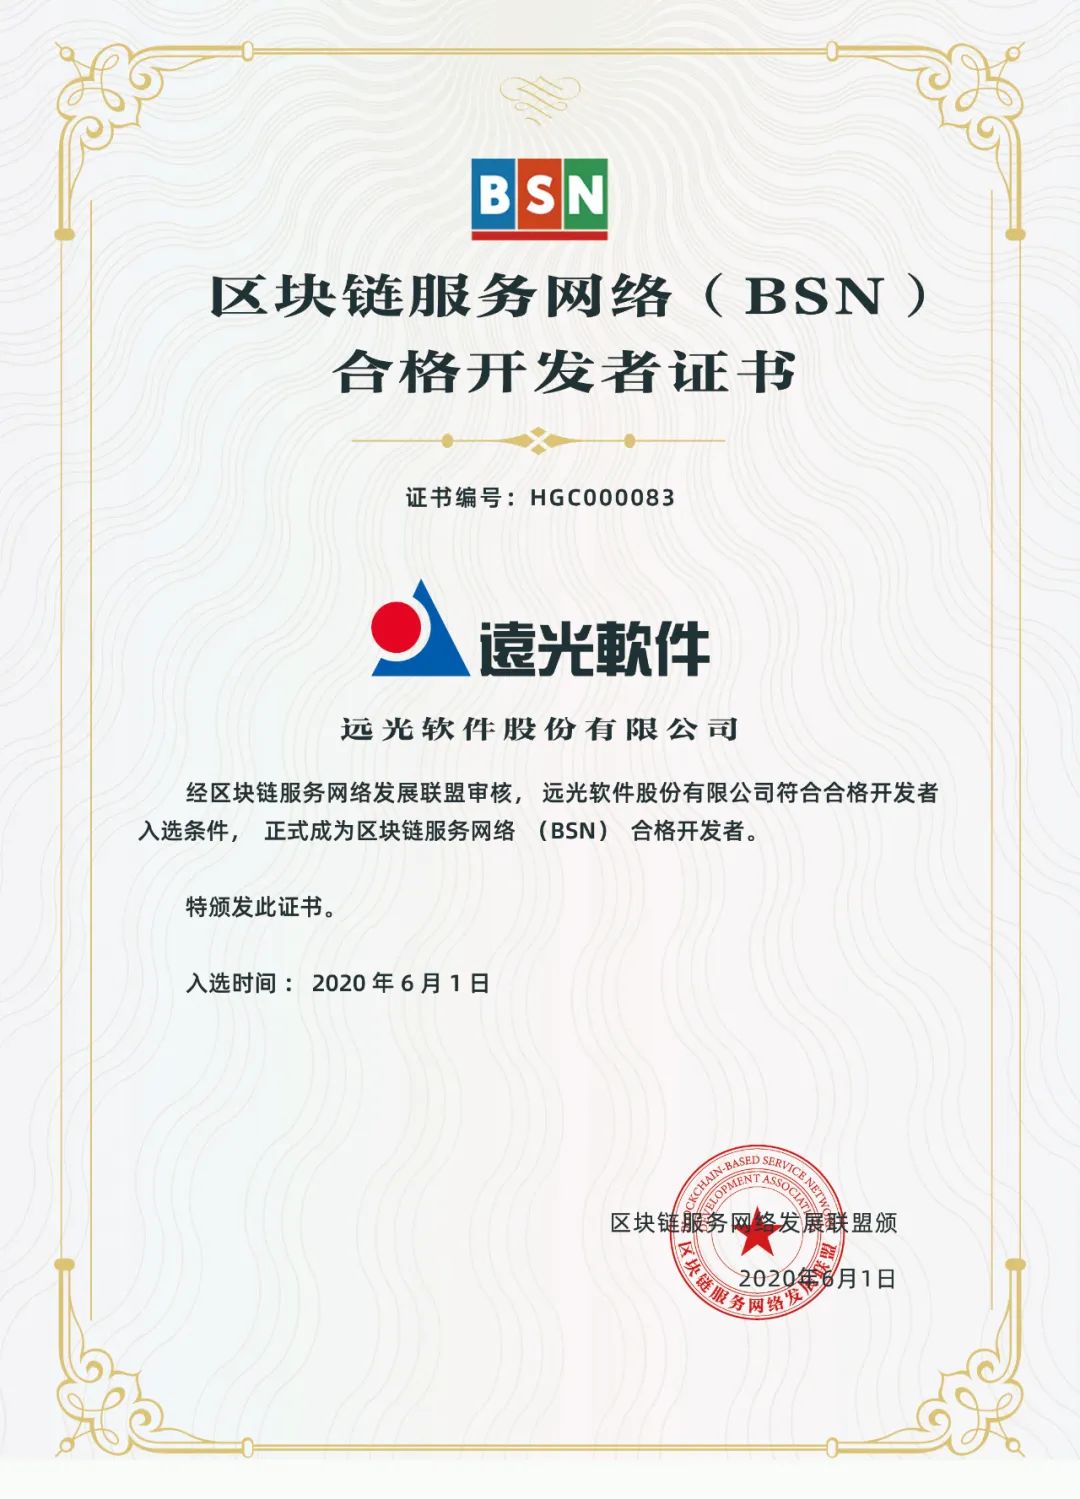 远光软件获国家级联盟链BSN合格开发者证书